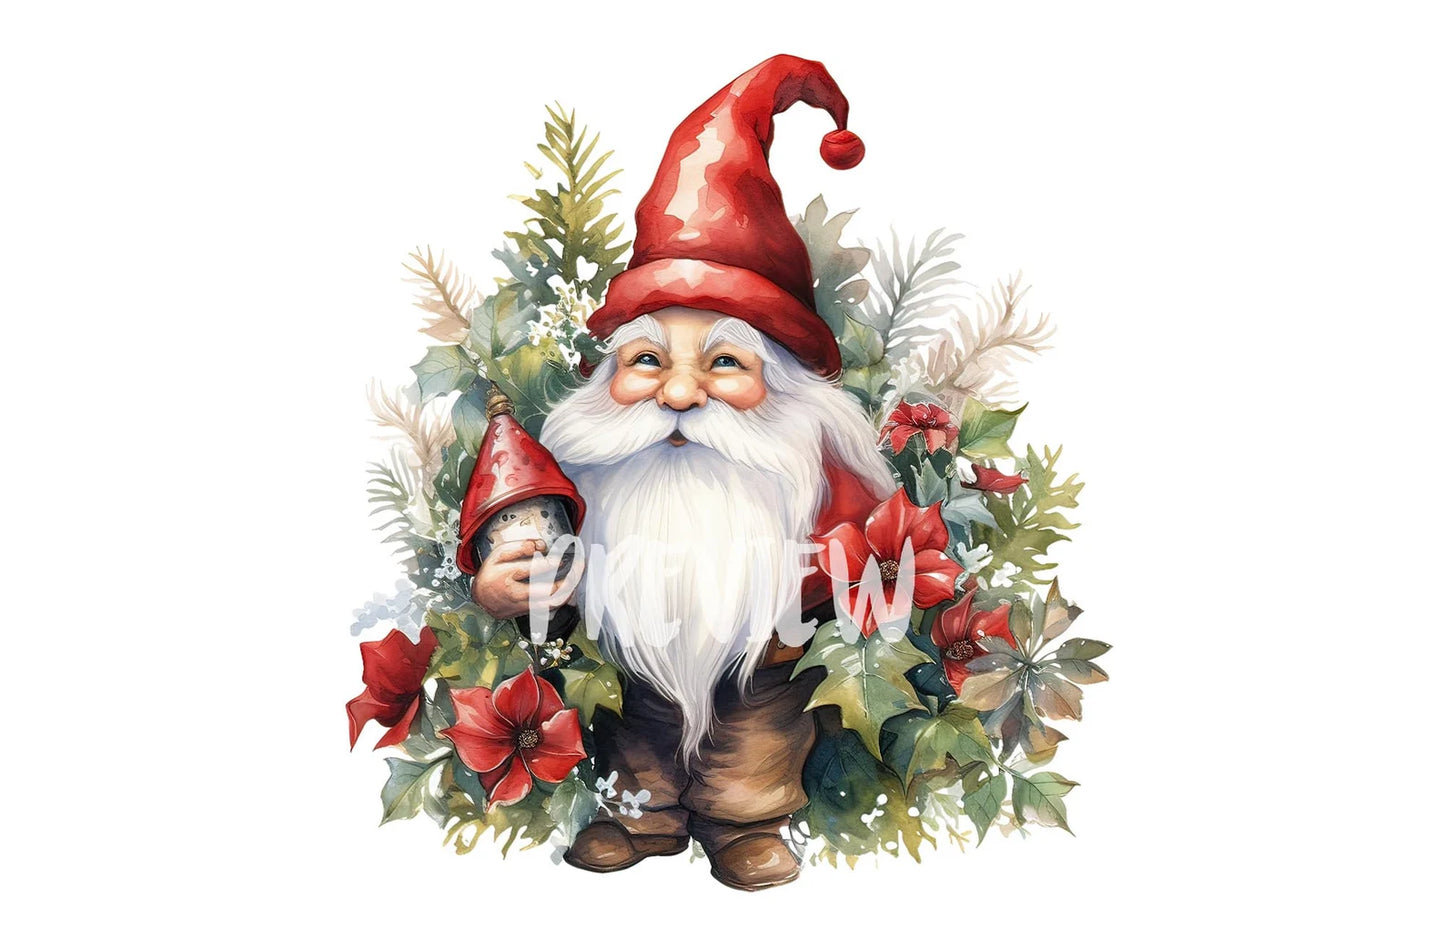 Watercolor Christmas Garden Gnome clipart